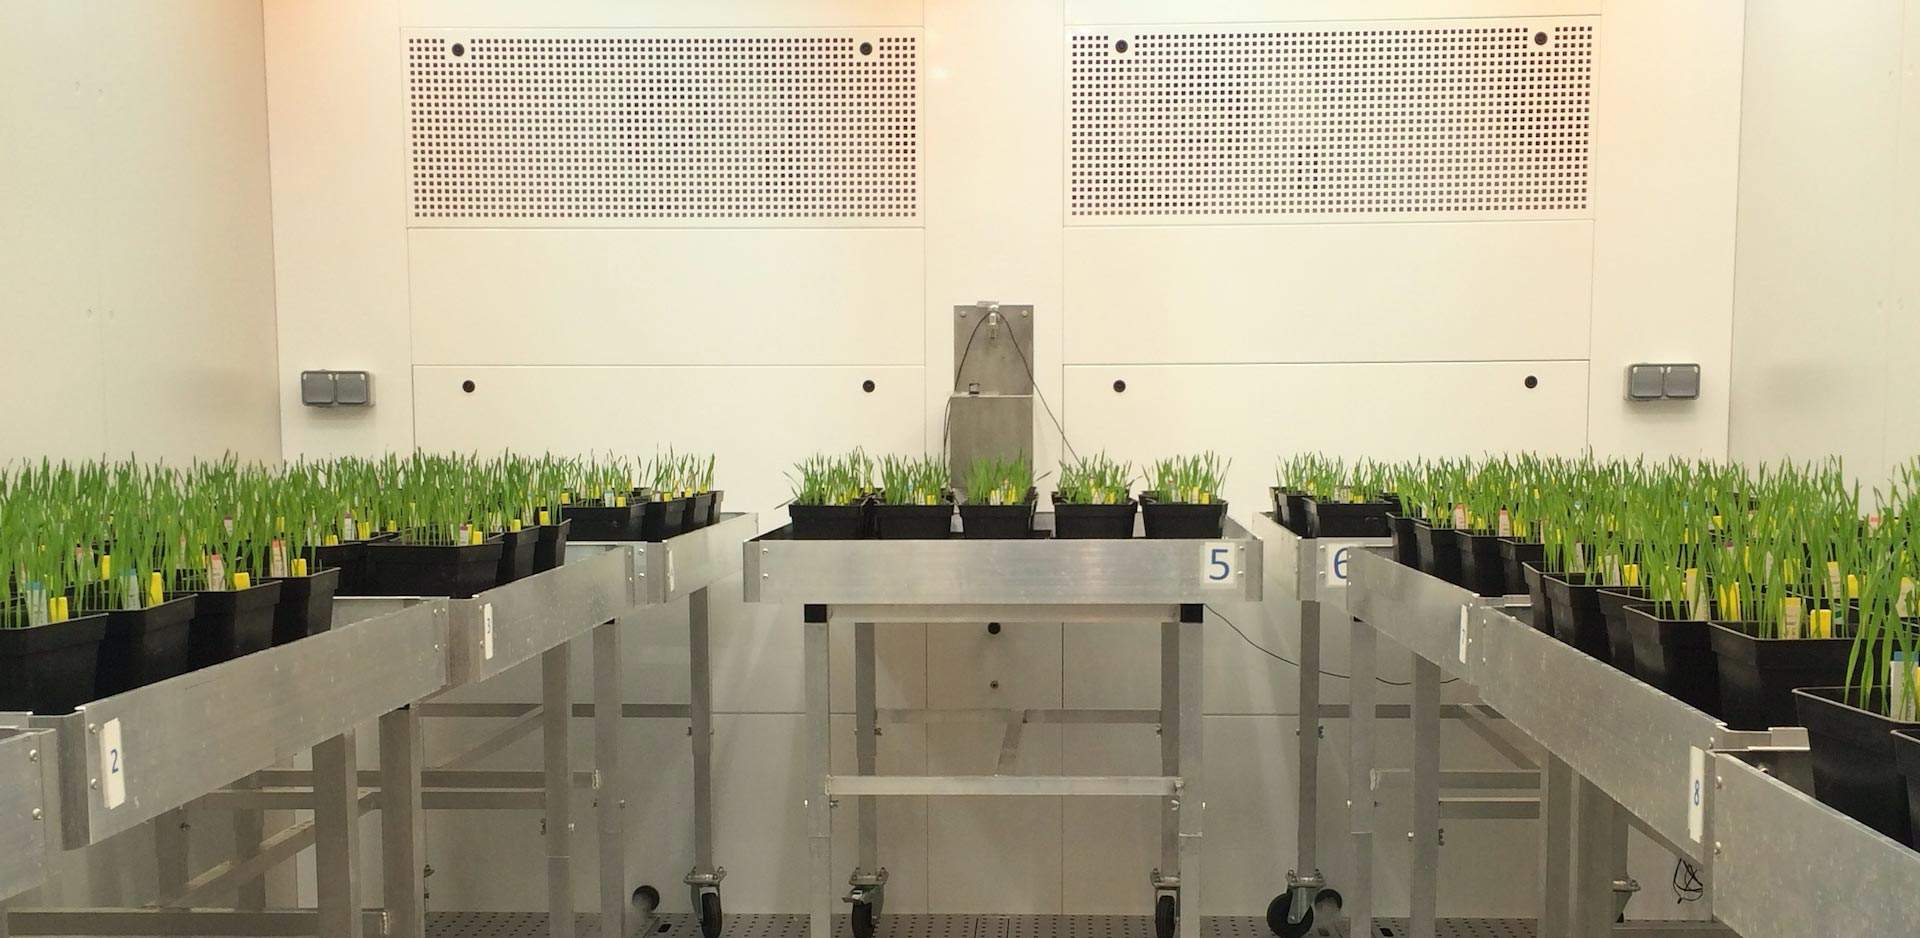 ตู้ควบคุมการเจริญเติบโตเพาะเลี้ยงพืช และชีวภาพ (BIO PLANT RESEARCH) ยี่ห้อ ARALAB รุ่น FITO CLIMA HP “WALK-IN” (SIT166)